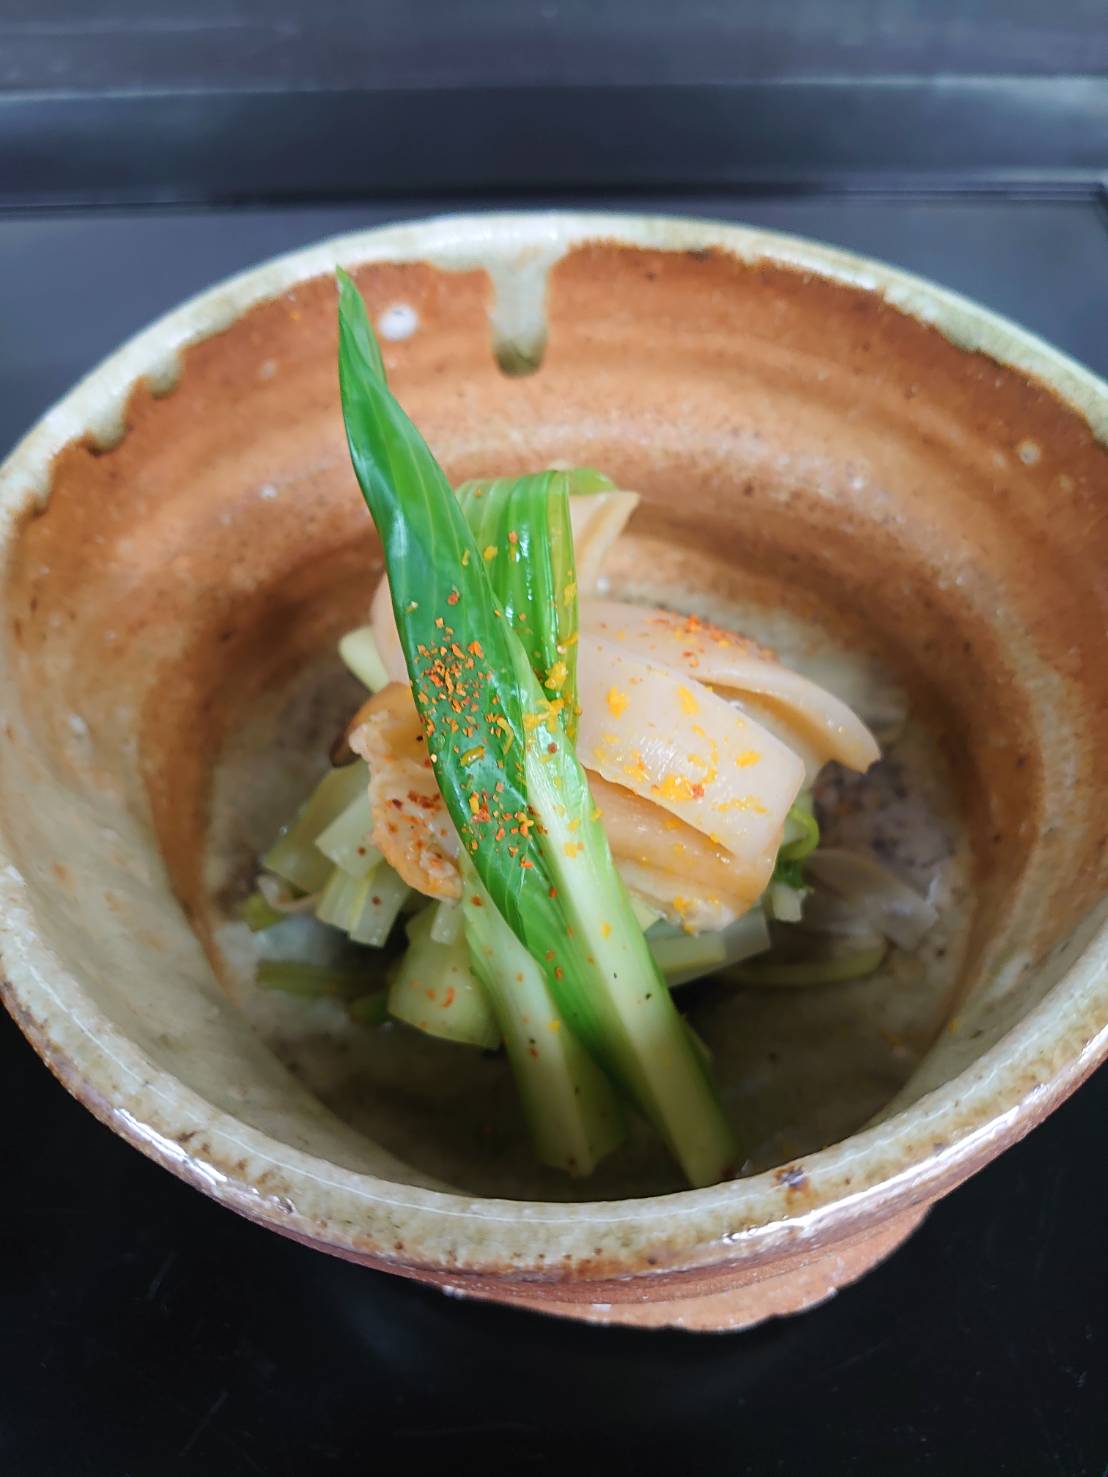 ミル貝 潮煮 海の恵み 食の底力 Japan 公式レシピサイト